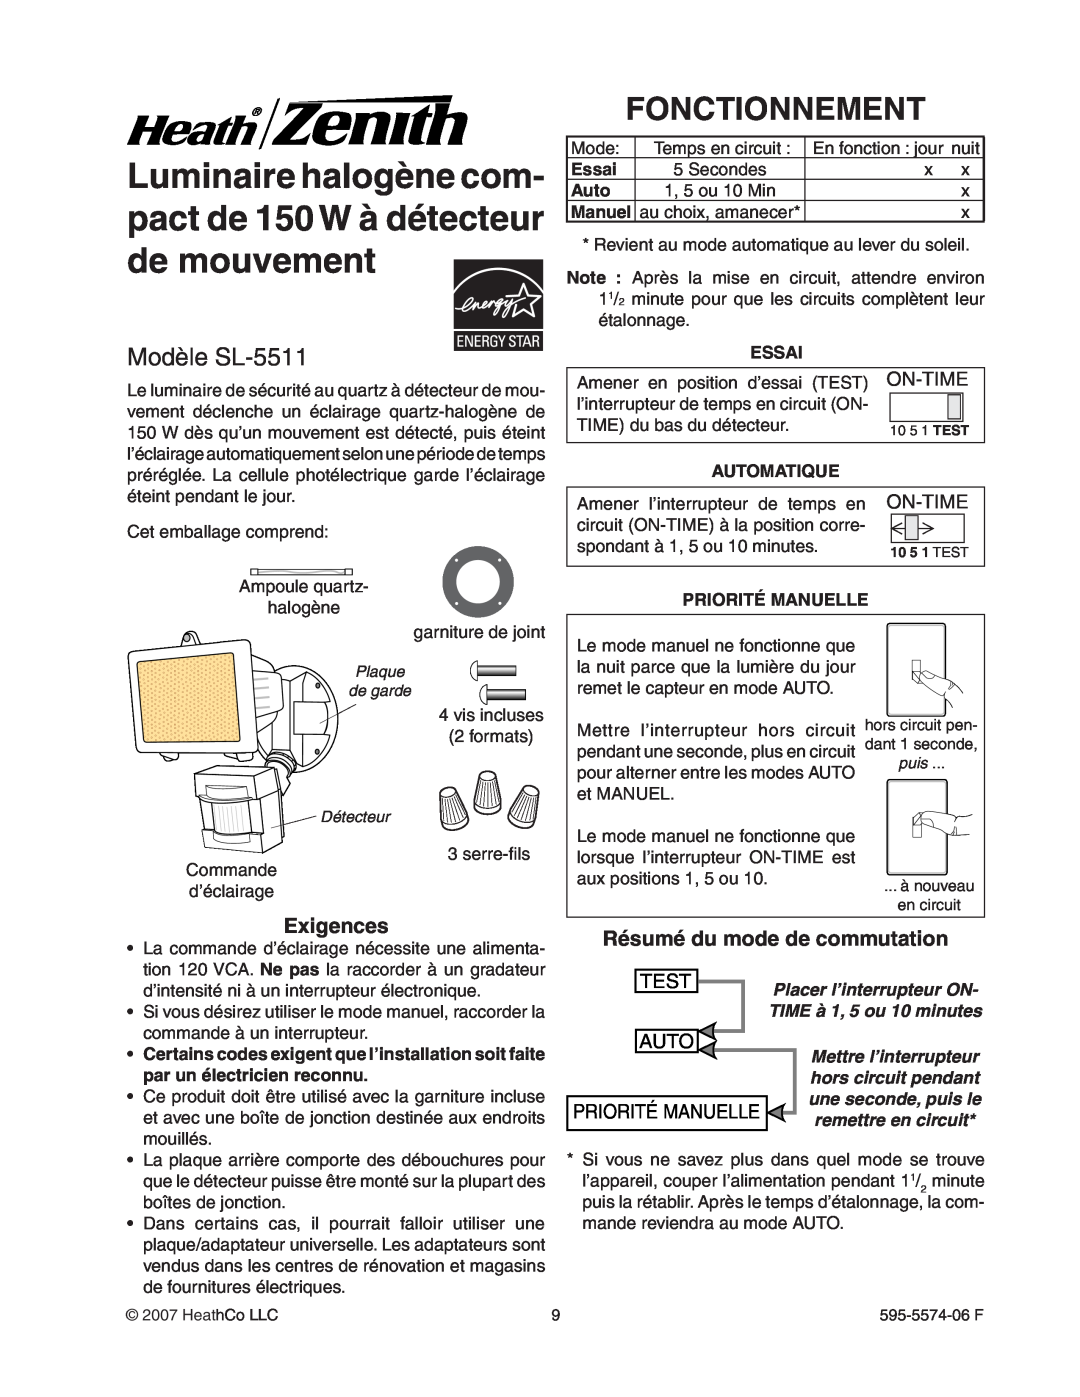 Heath Zenith manual Fonctionnement, Modèle SL-5511, On-Time, Test, Priorité Manuelle, Essai, Automatique 